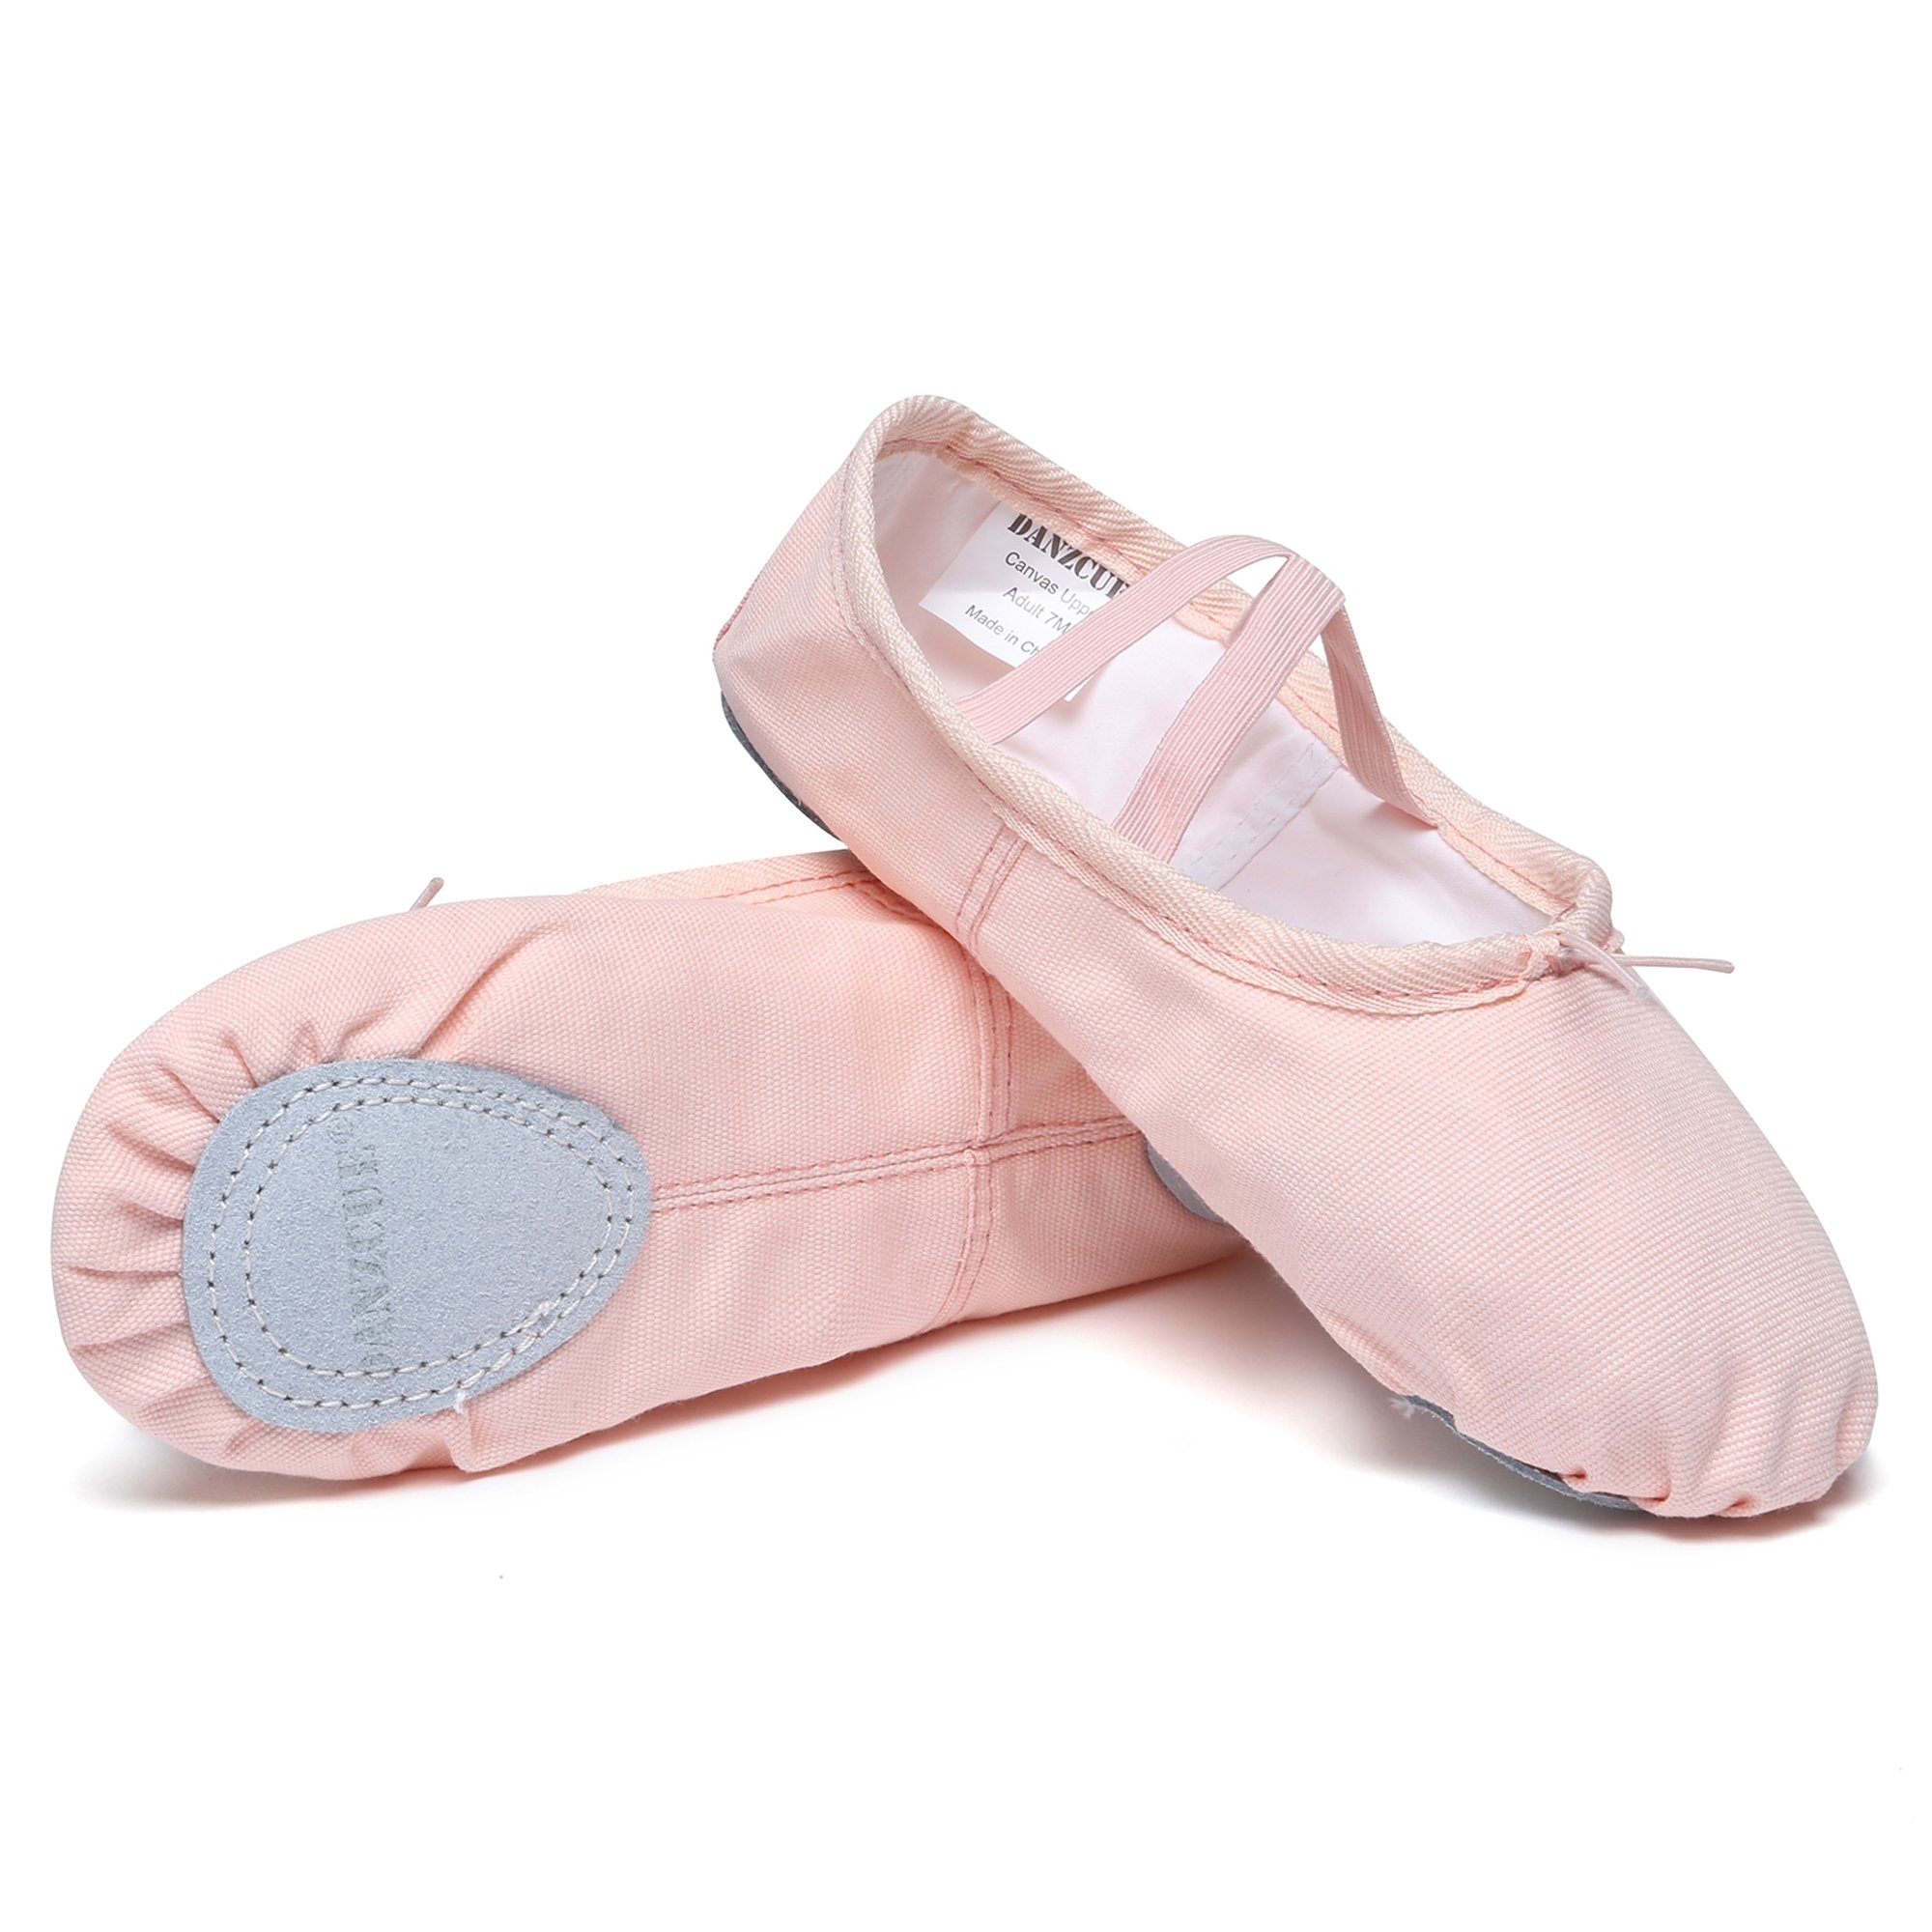 Danzcue Ballet Slipper Women's Canvas Split Sole Ballet Shoes - Click Image to Close